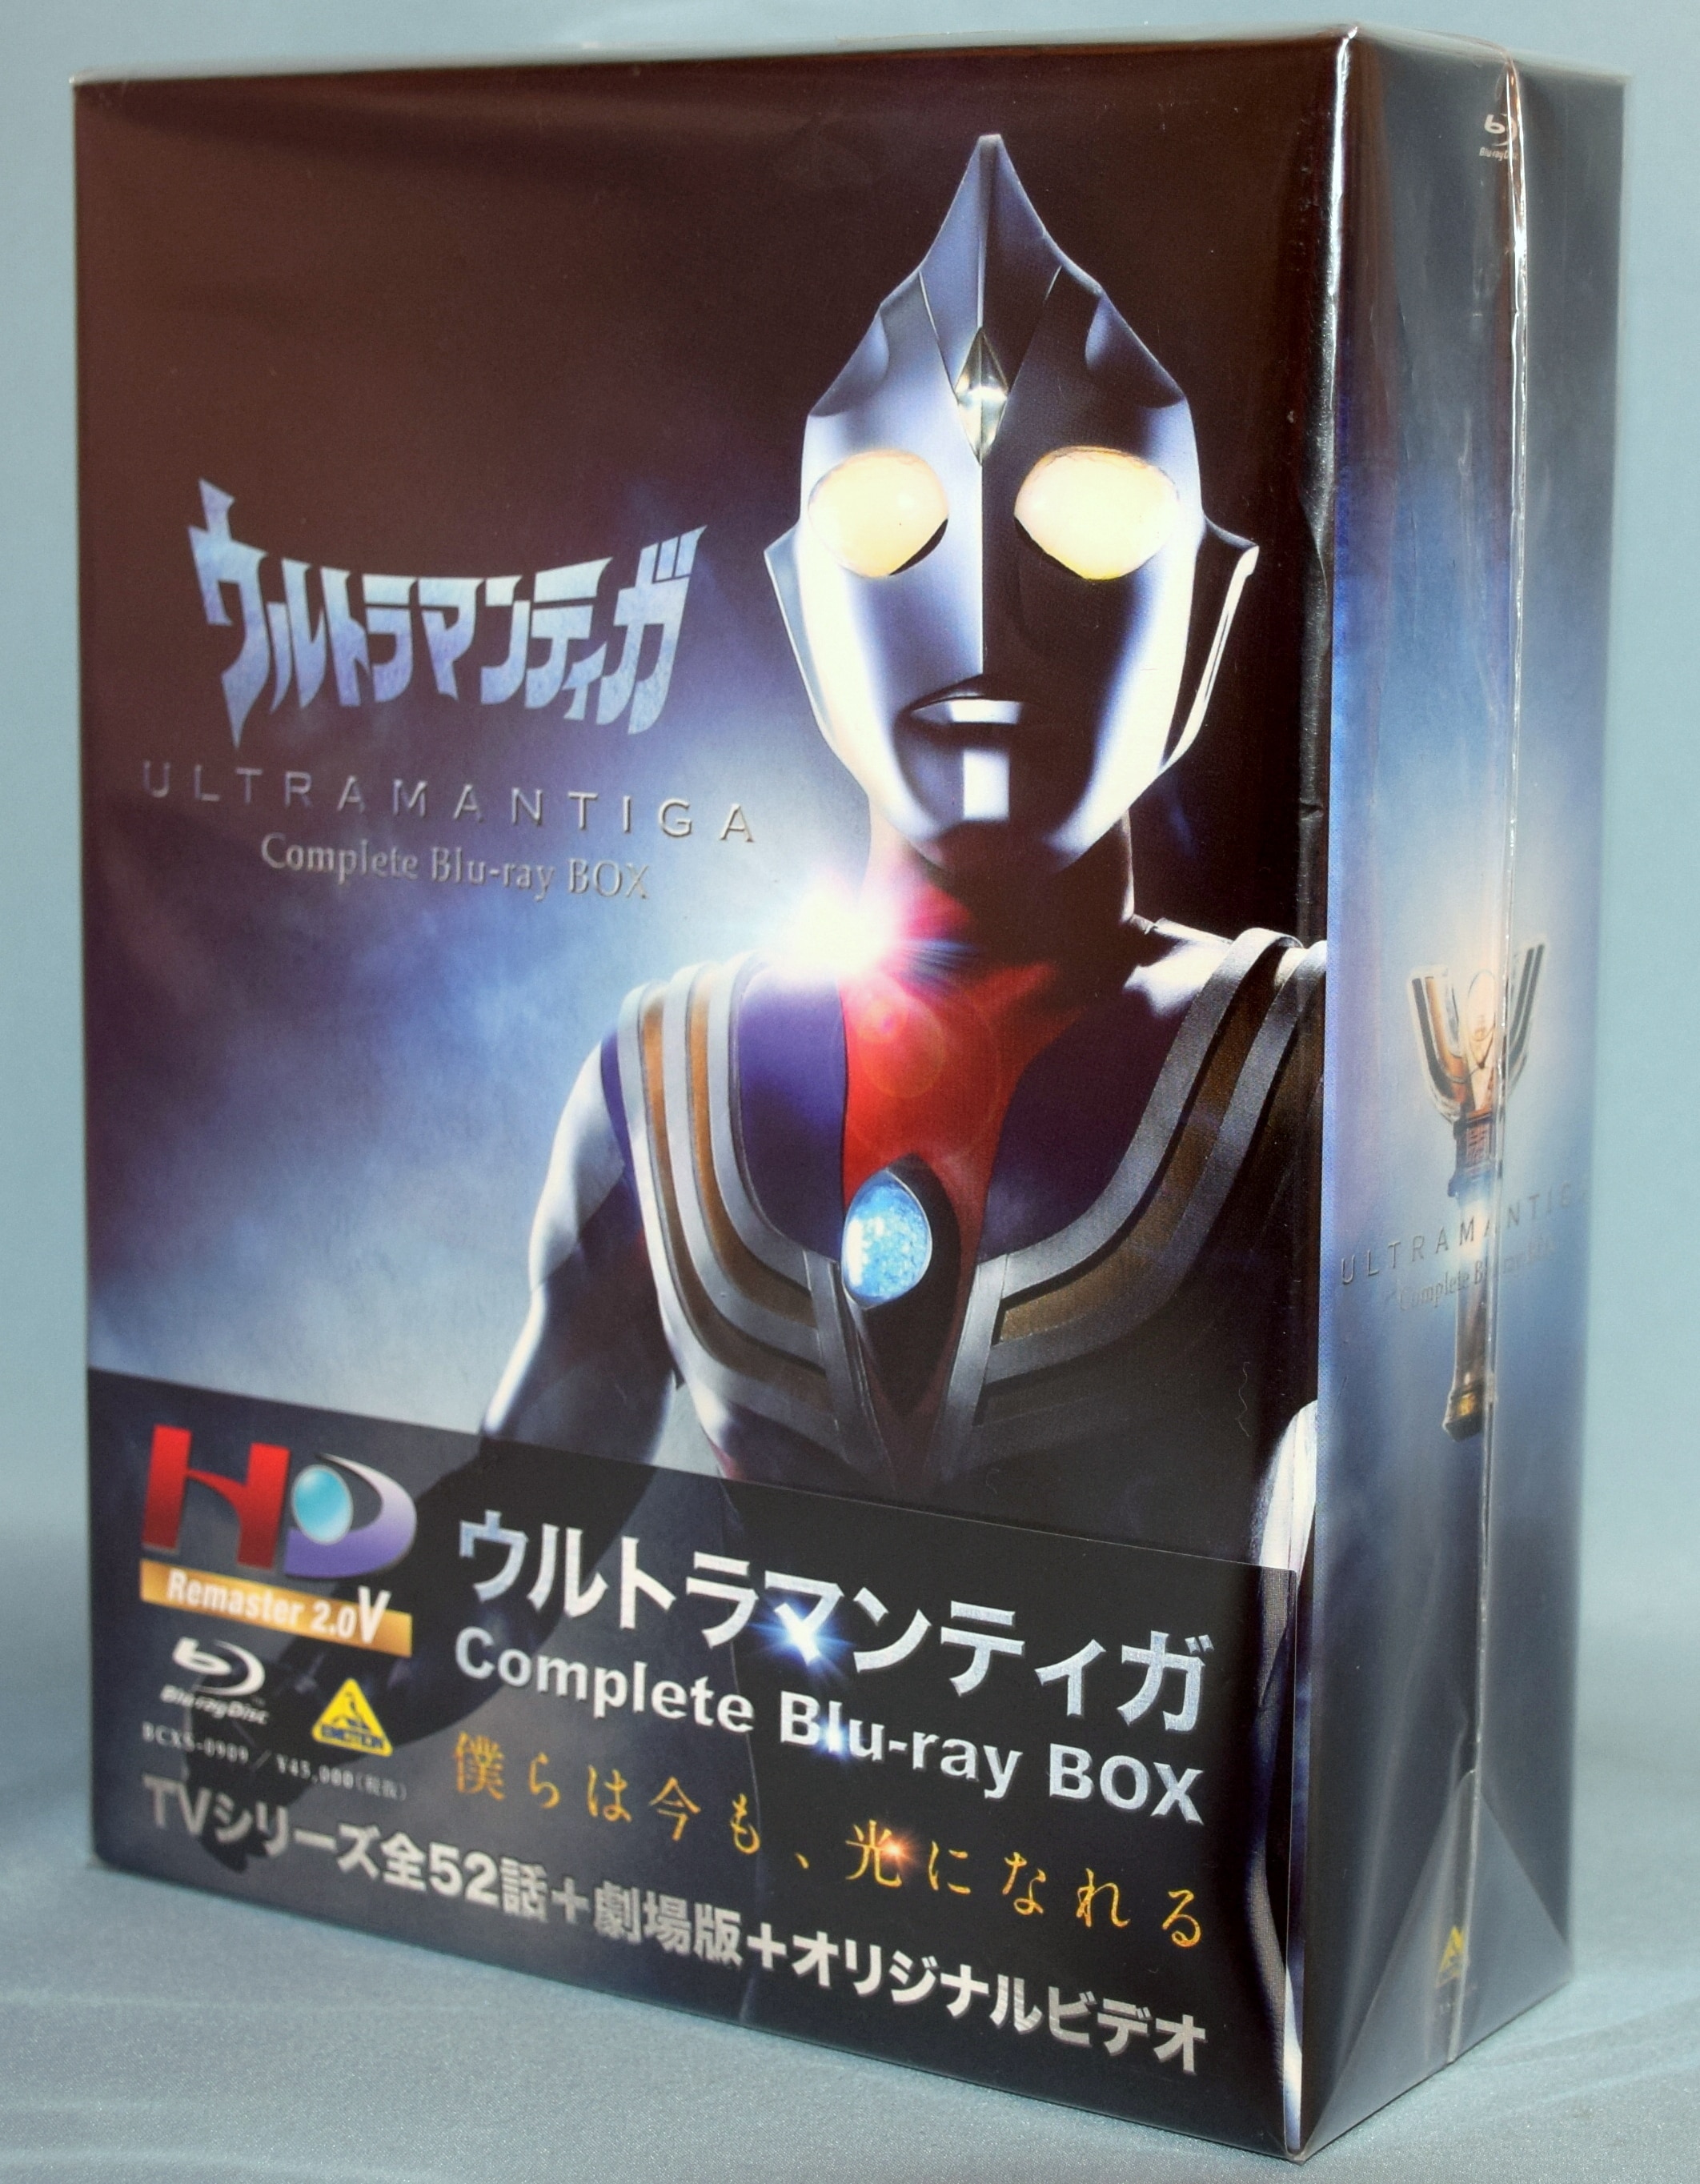 ウルトラマンティガ Complete Blu-ray BOX | Mandarake Online Shop